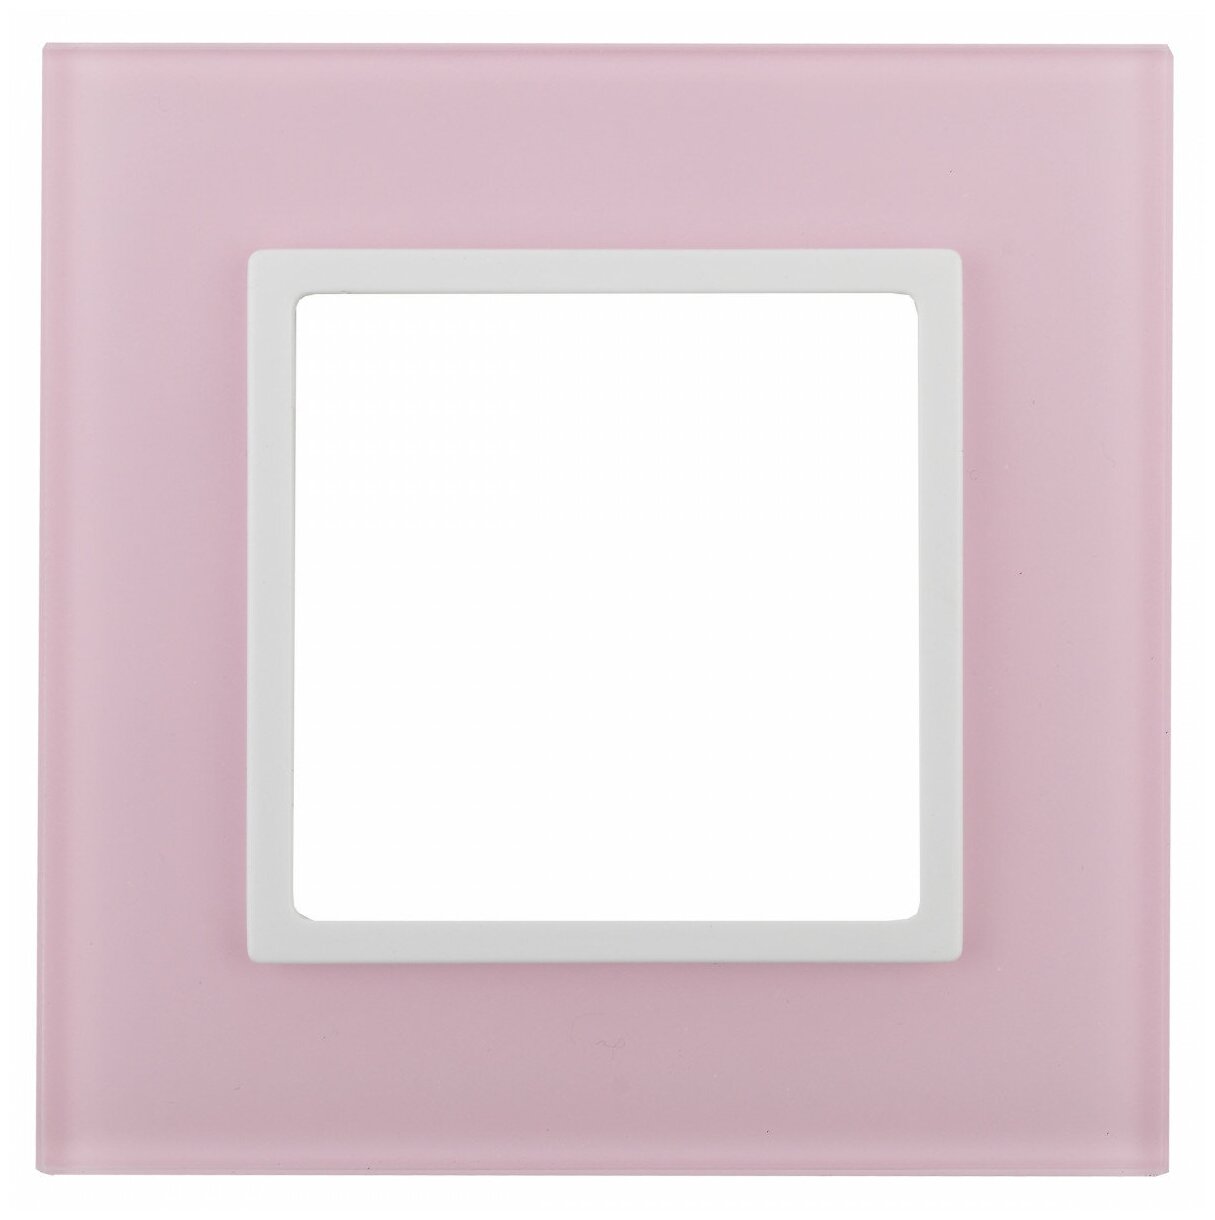 14-5101-30 14-5101-30 ЭРА Рамка на 1 пост, стекло, Эра Elegance, розовый+бел, цена за 1 шт